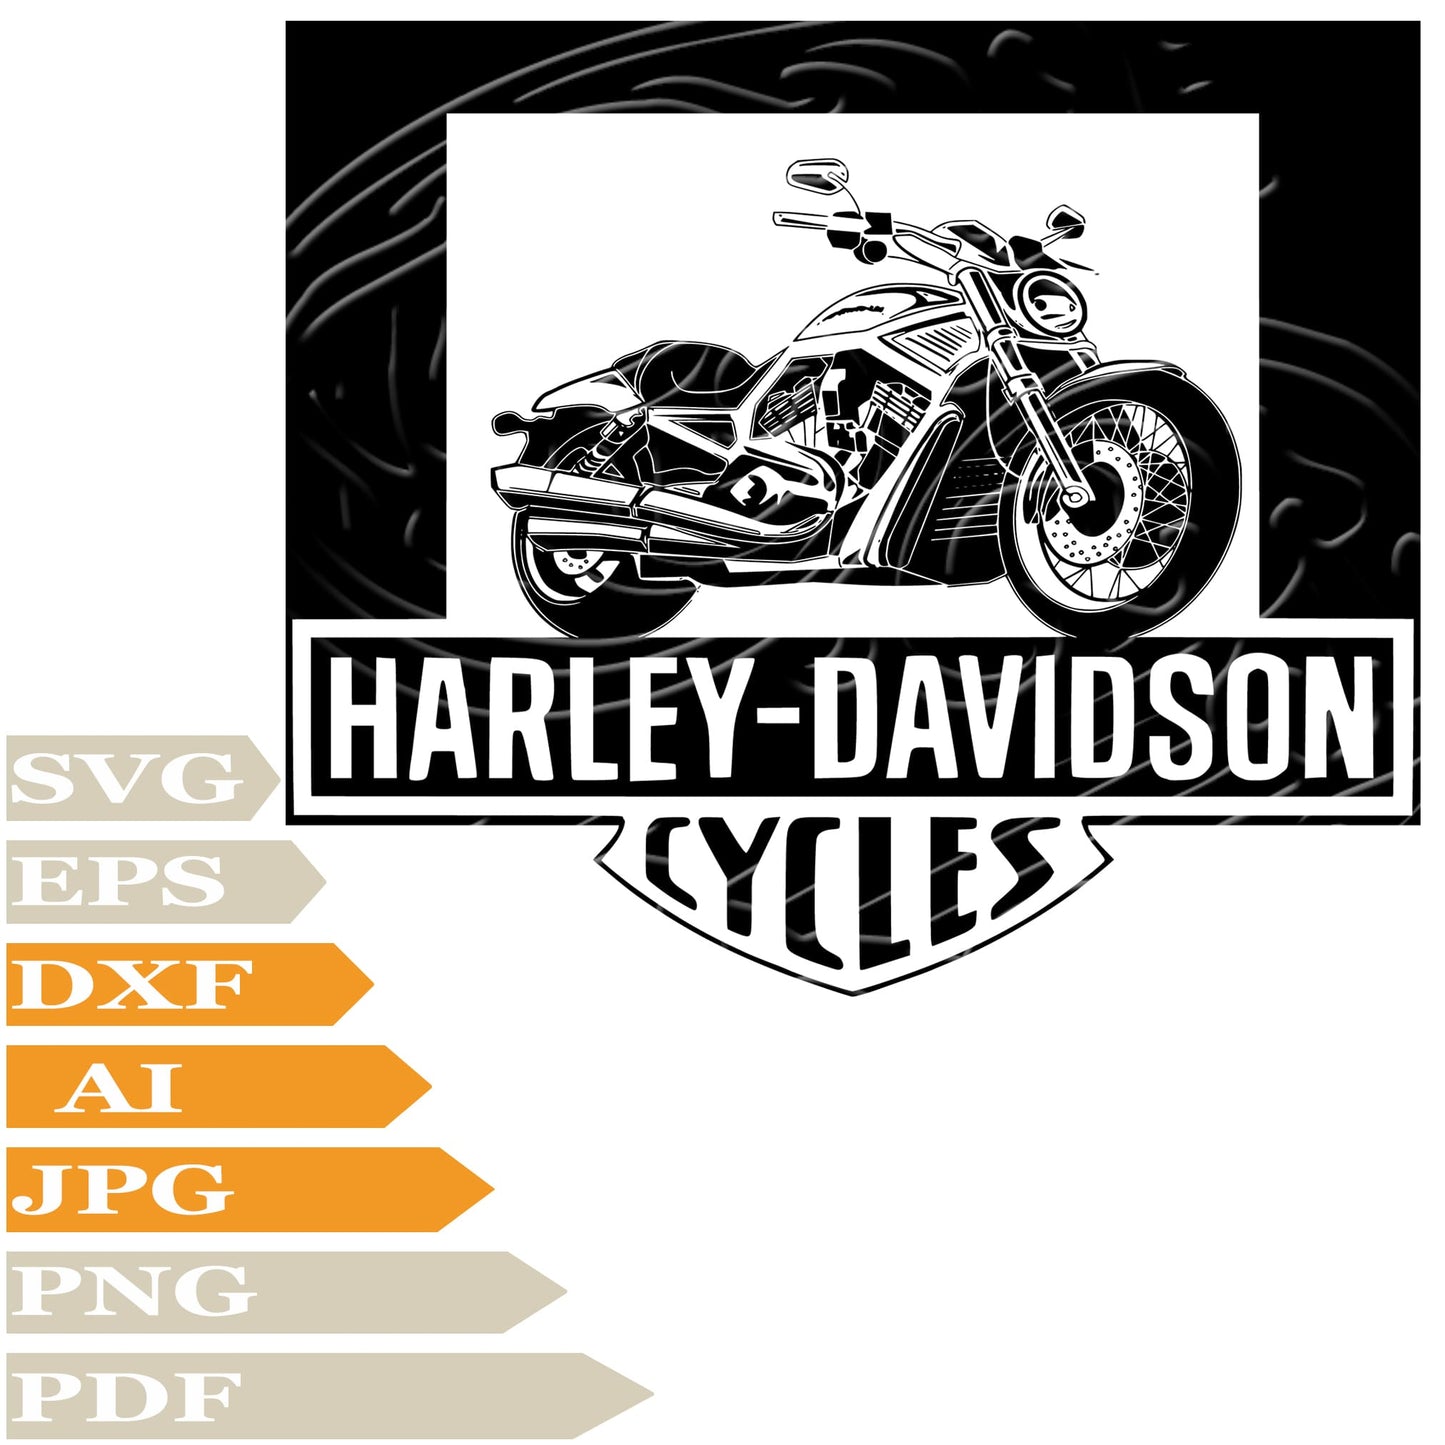 Motorcycles Harley Davidson Svg File, Harley Davidson Svg Design, Harley Davidson Motorcycles Png, Harley Davidson Logo Vector Graphics, Motorcycles Harley Davidson Svg For Tattoo, Harley Davidson Svg For Cricut